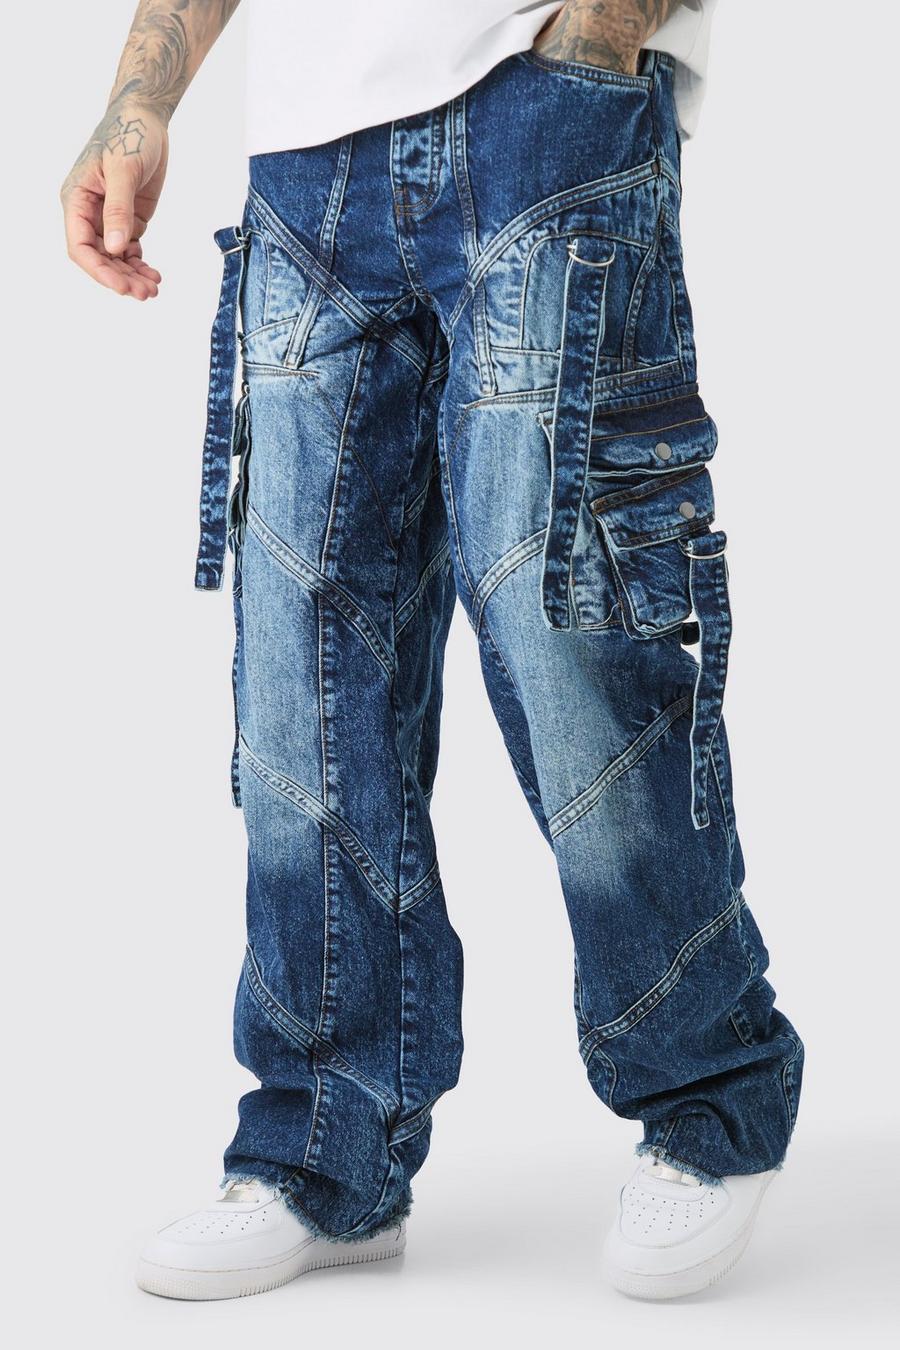 Jeans Tall extra comodi con fascette rigide e fibbia, Indigo